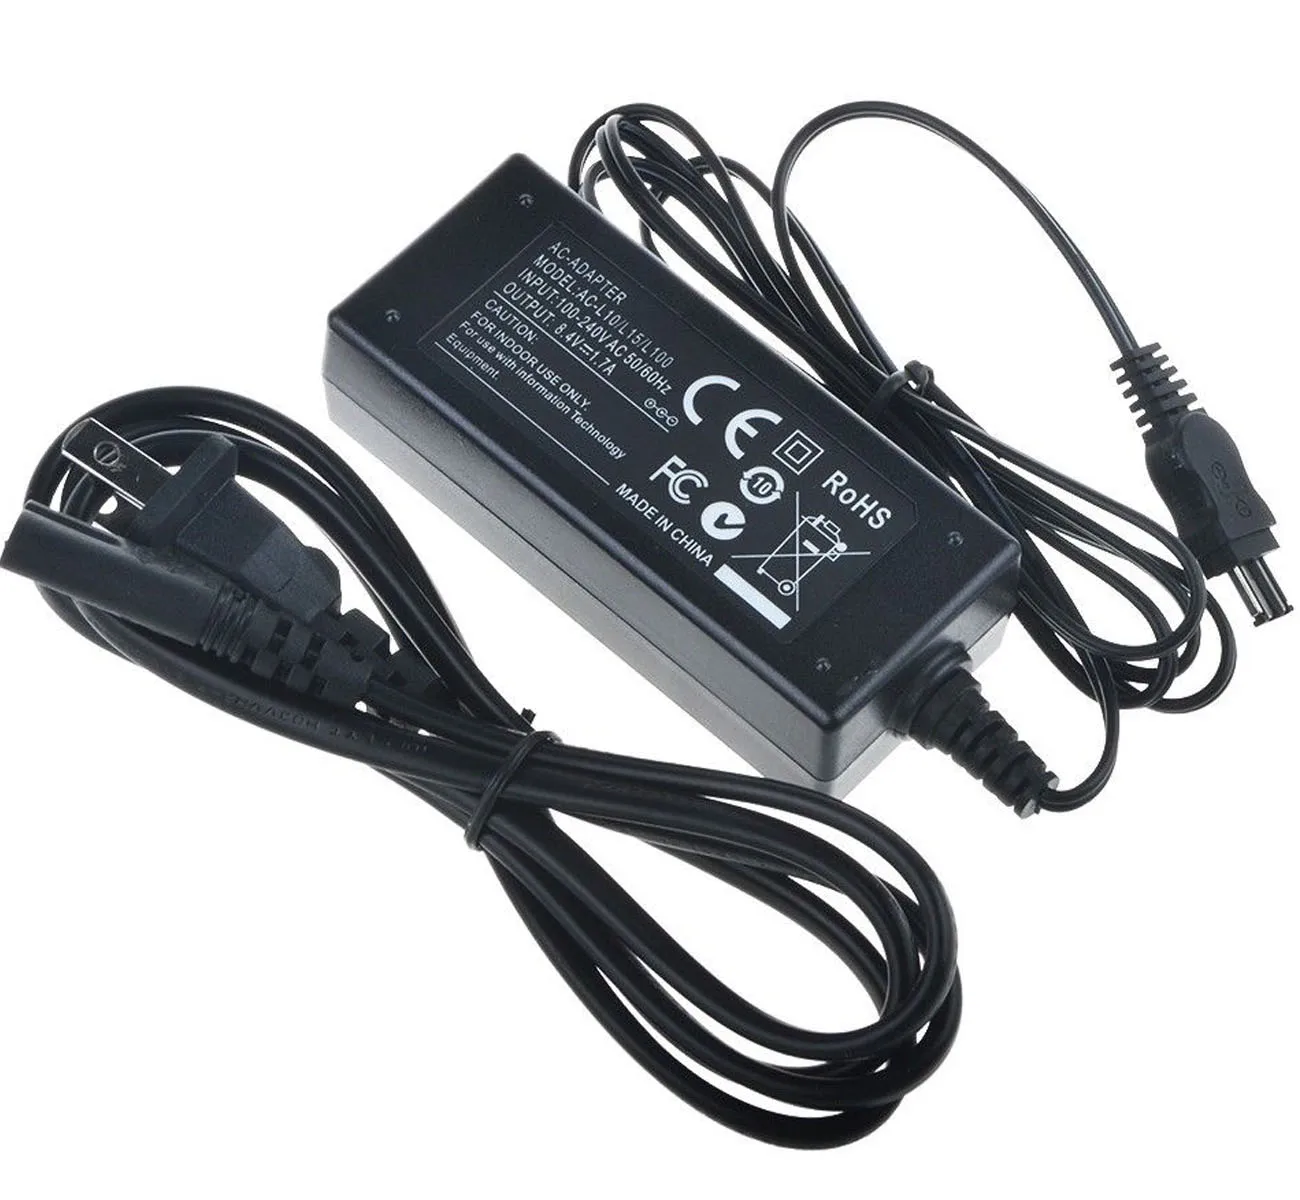 Original VHBW ® fuente de alimentación cable de carga para Sony dcr-trv900e trv940e trv950e 